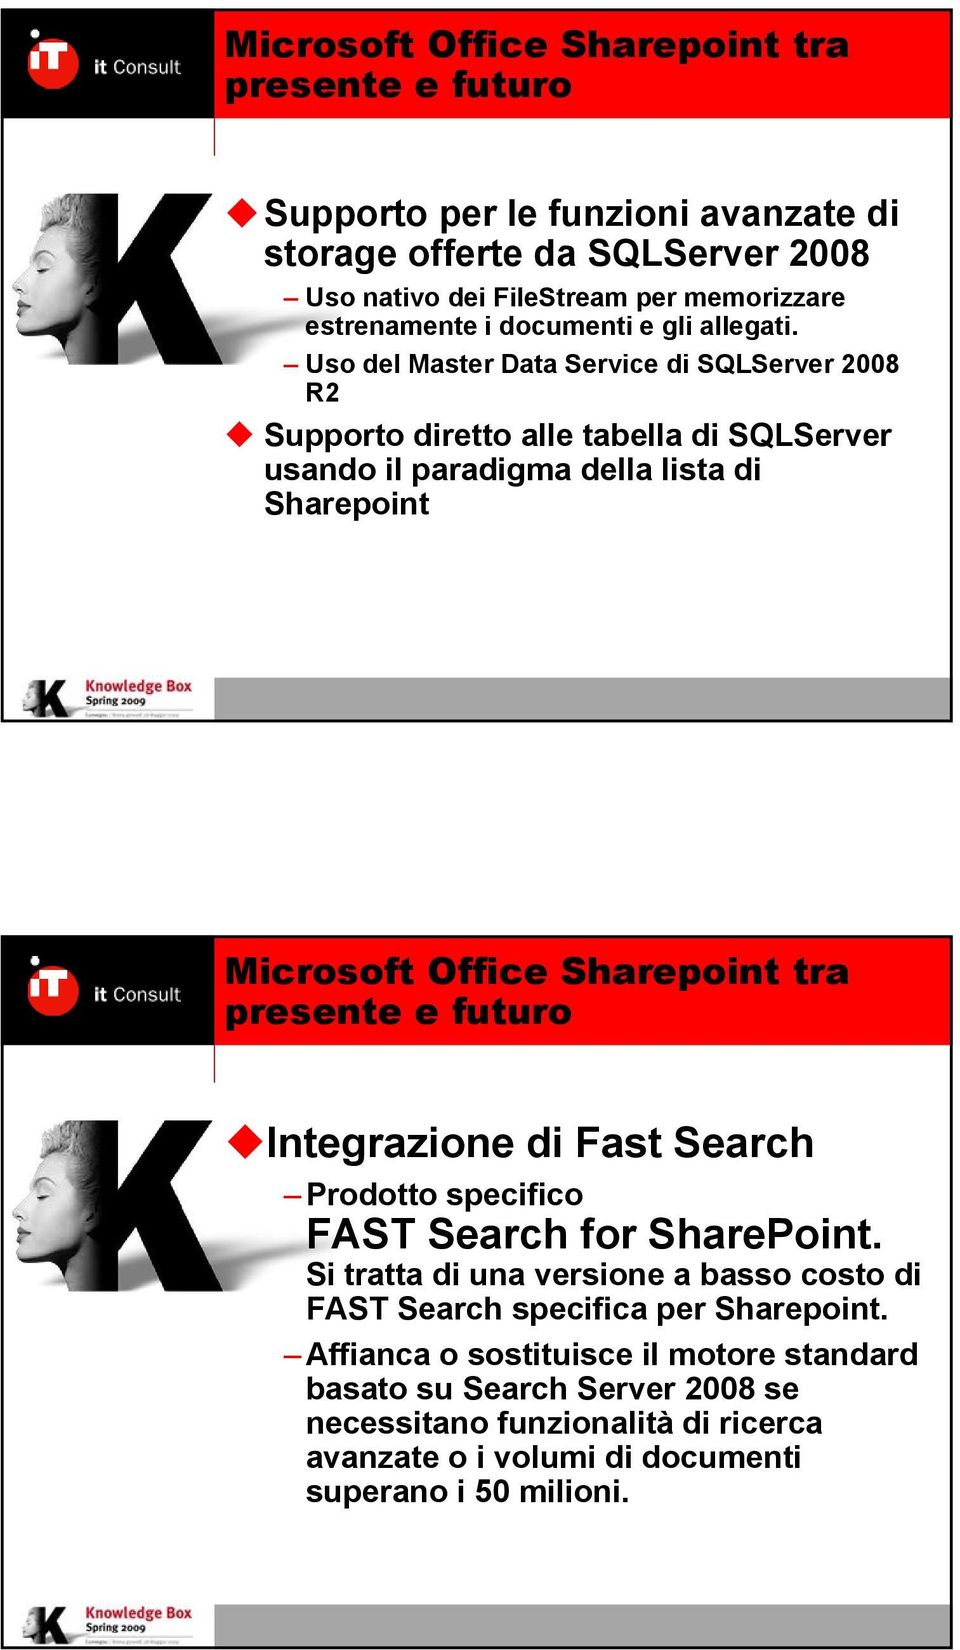 Fast Search Prodotto specifico FAST Search for SharePoint. Si tratta di una versione a basso costo di FAST Search specifica per Sharepoint.